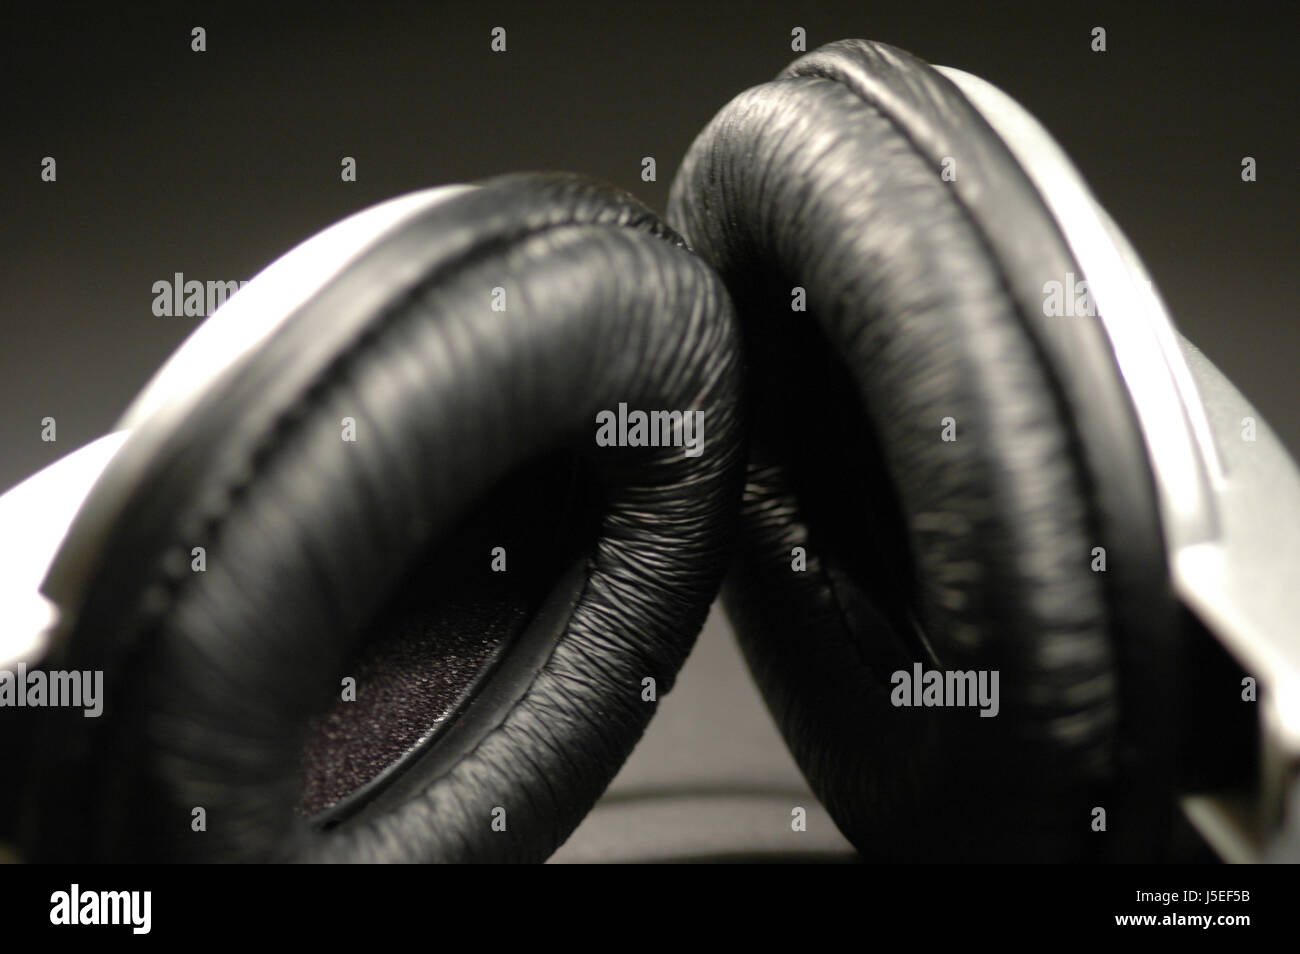 Jetblack basané noir argent noir profond d'écoute casque écouteurs Banque D'Images